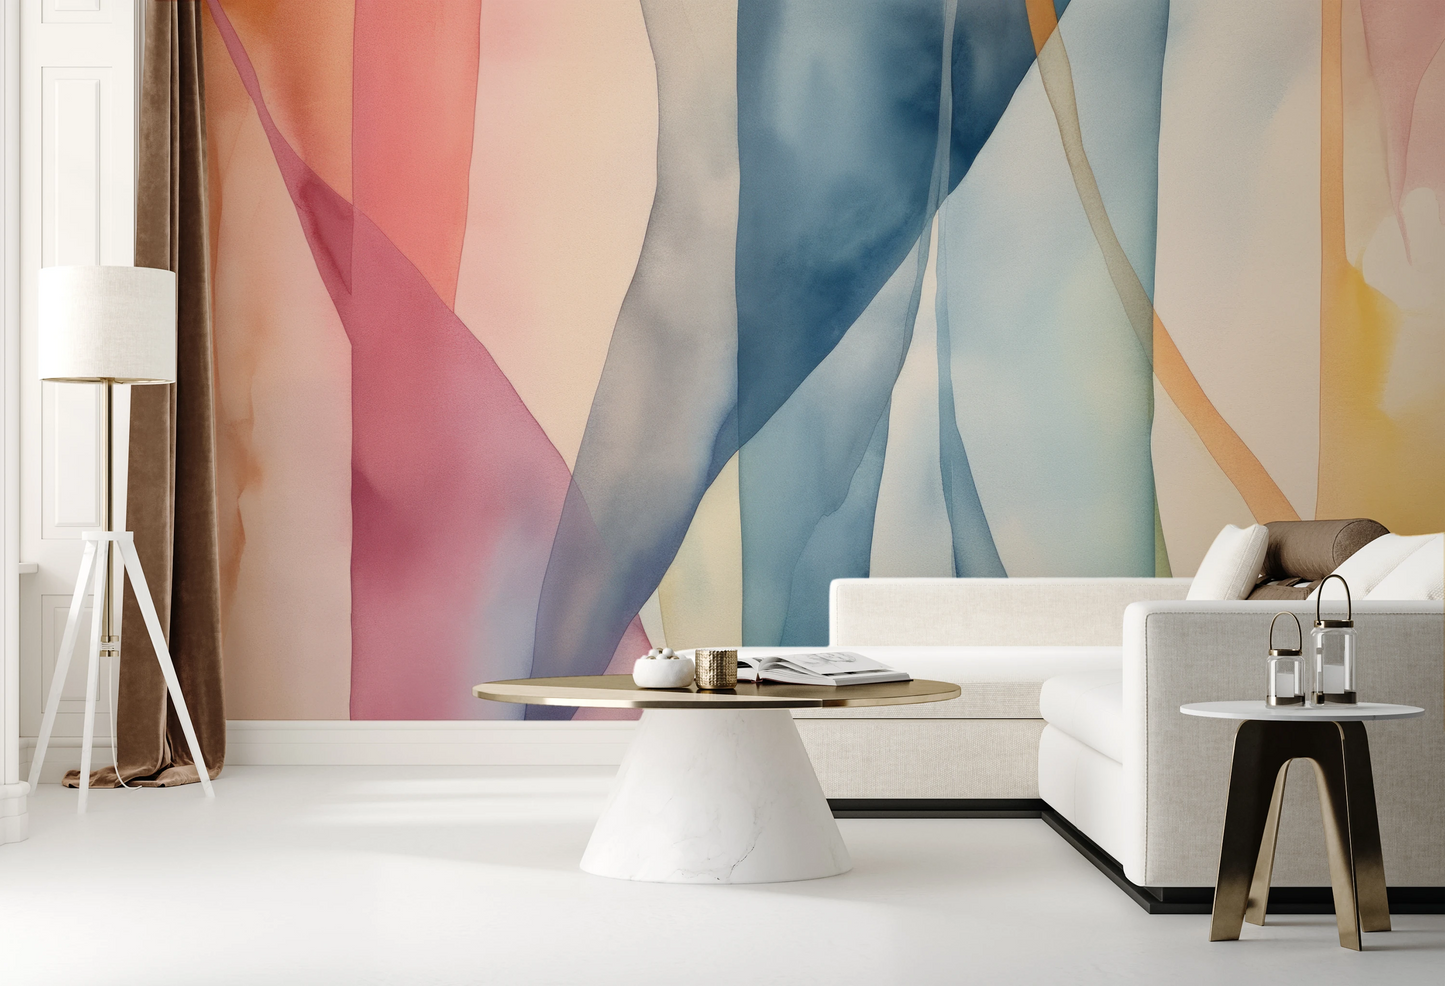 Wzór fototapety malowanej o nazwie Pastel Dreamscape pokazanej w aranżacji wnętrza.